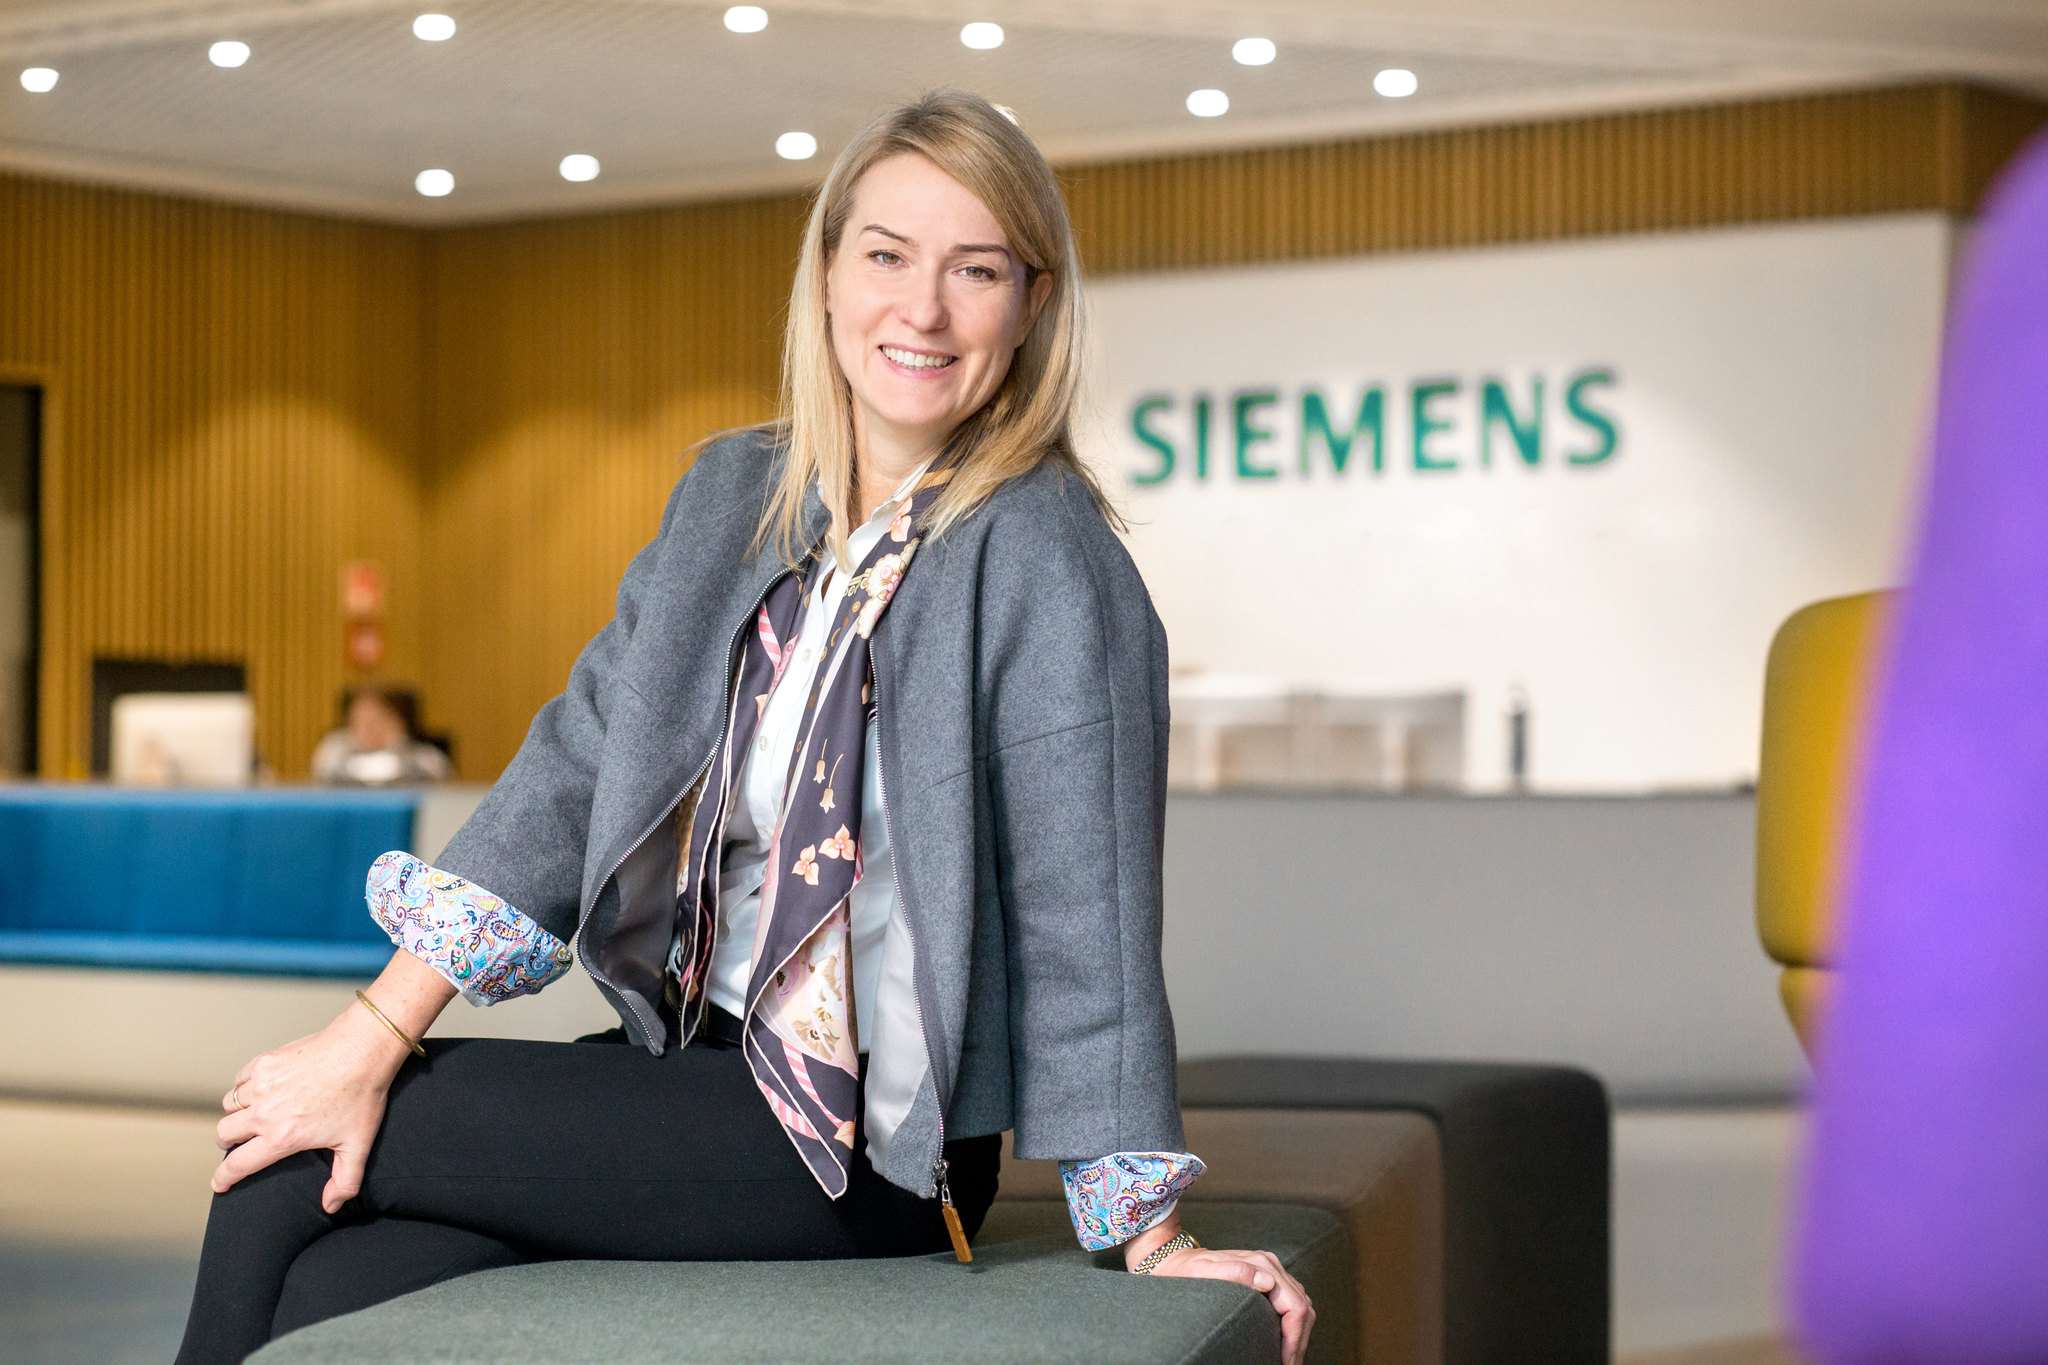 Katarzyna Halwa, CFO Siemens Polska i Siemens Mobility